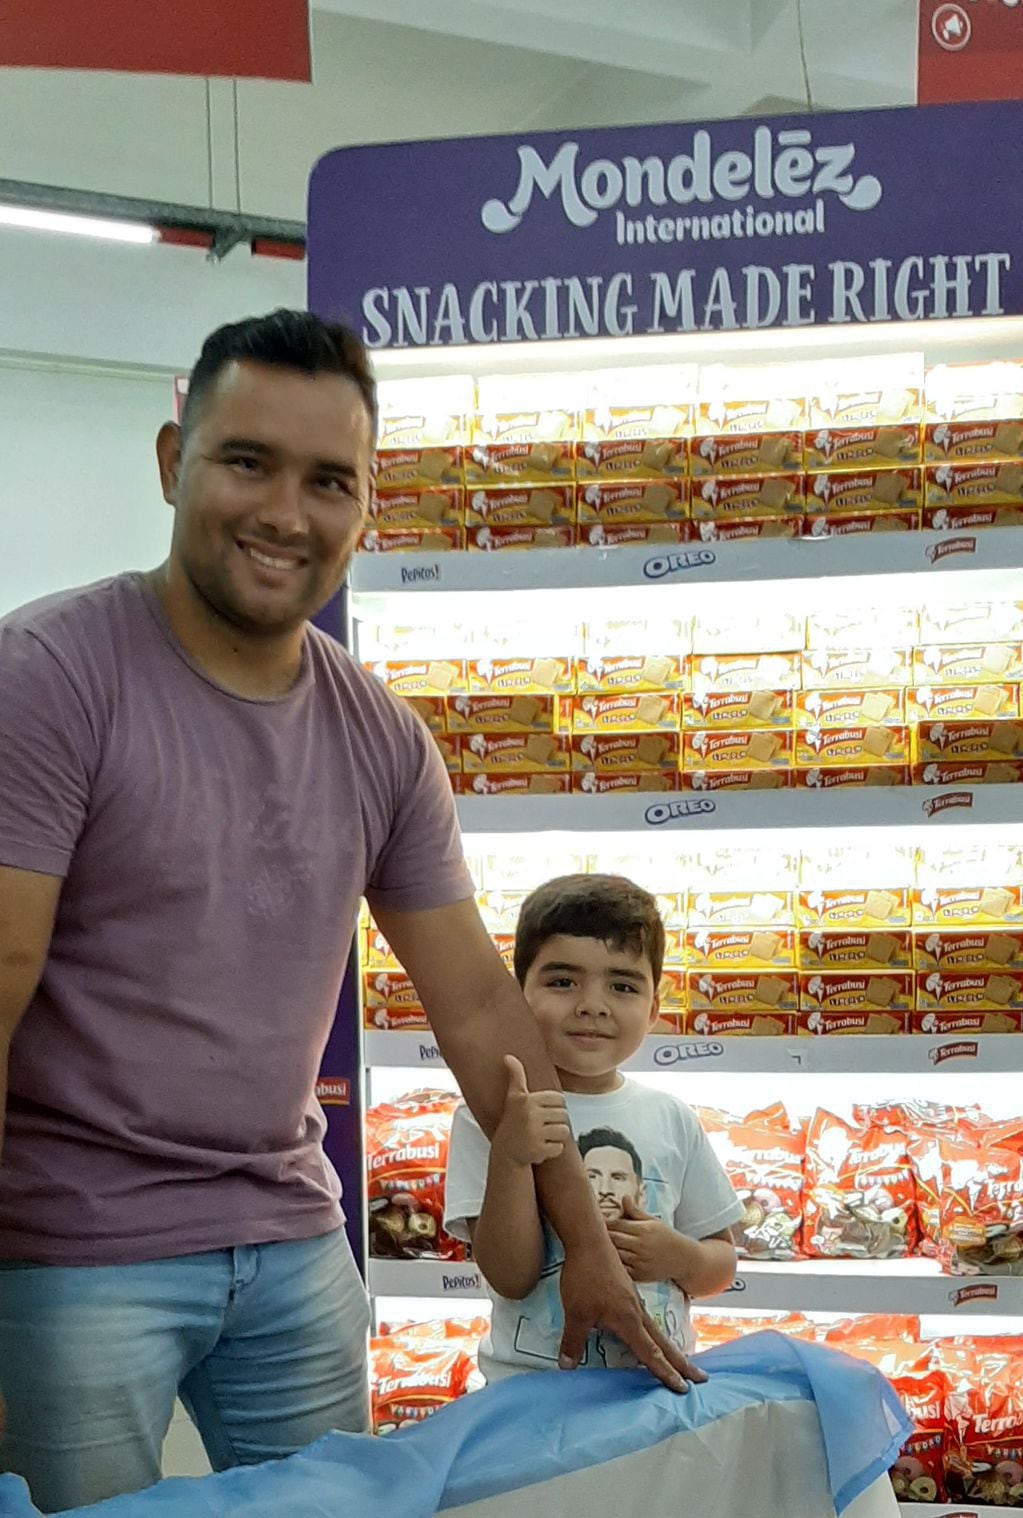 El supermercado La Peruana sortea ordenes de compra por cada gol que la selección consiga.